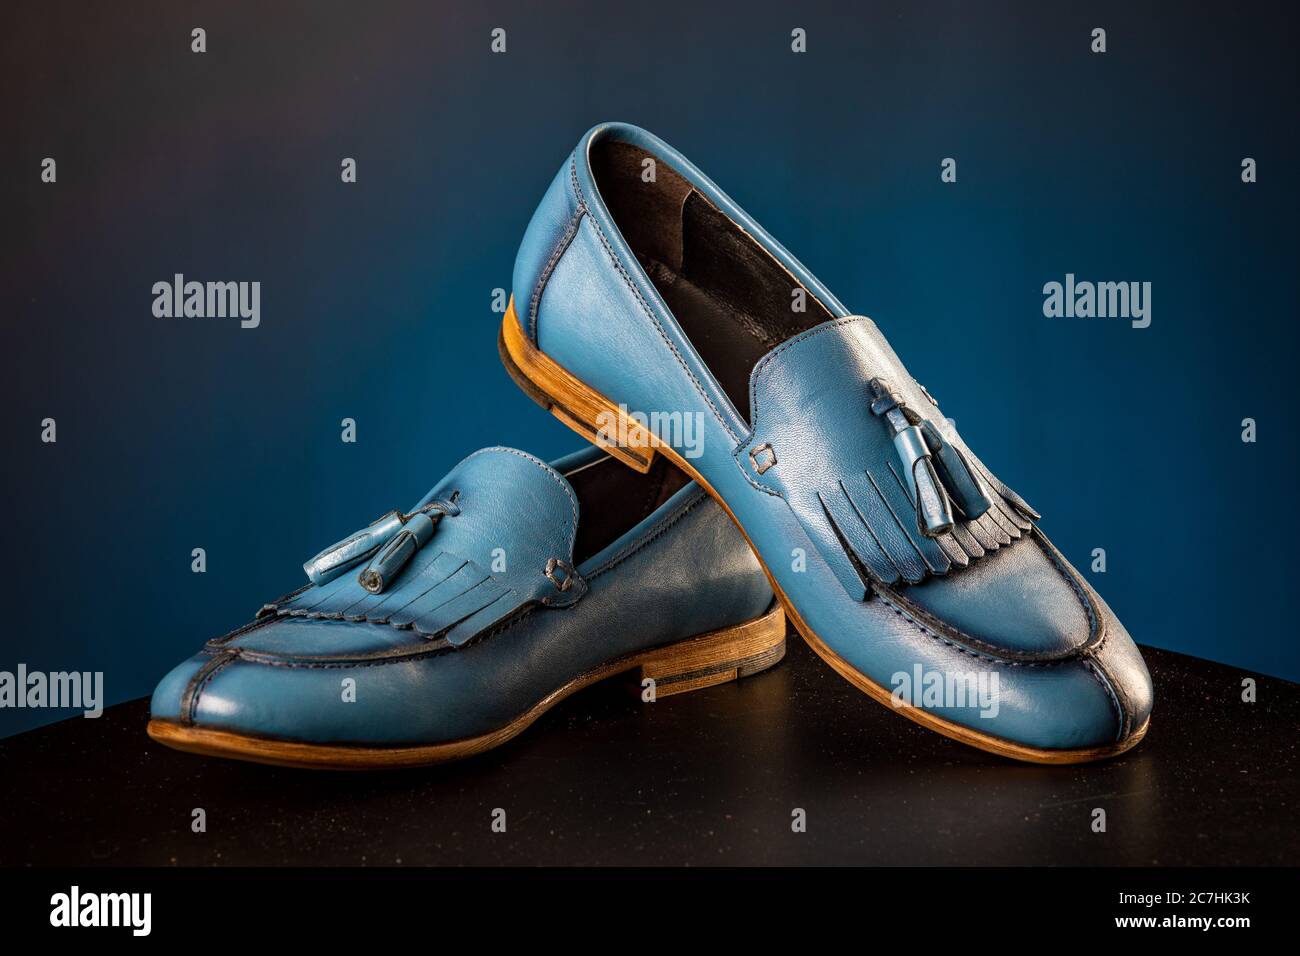 Herren Leder klassische blaue Schuhe auf blauem Hintergrund Stockfotografie  - Alamy